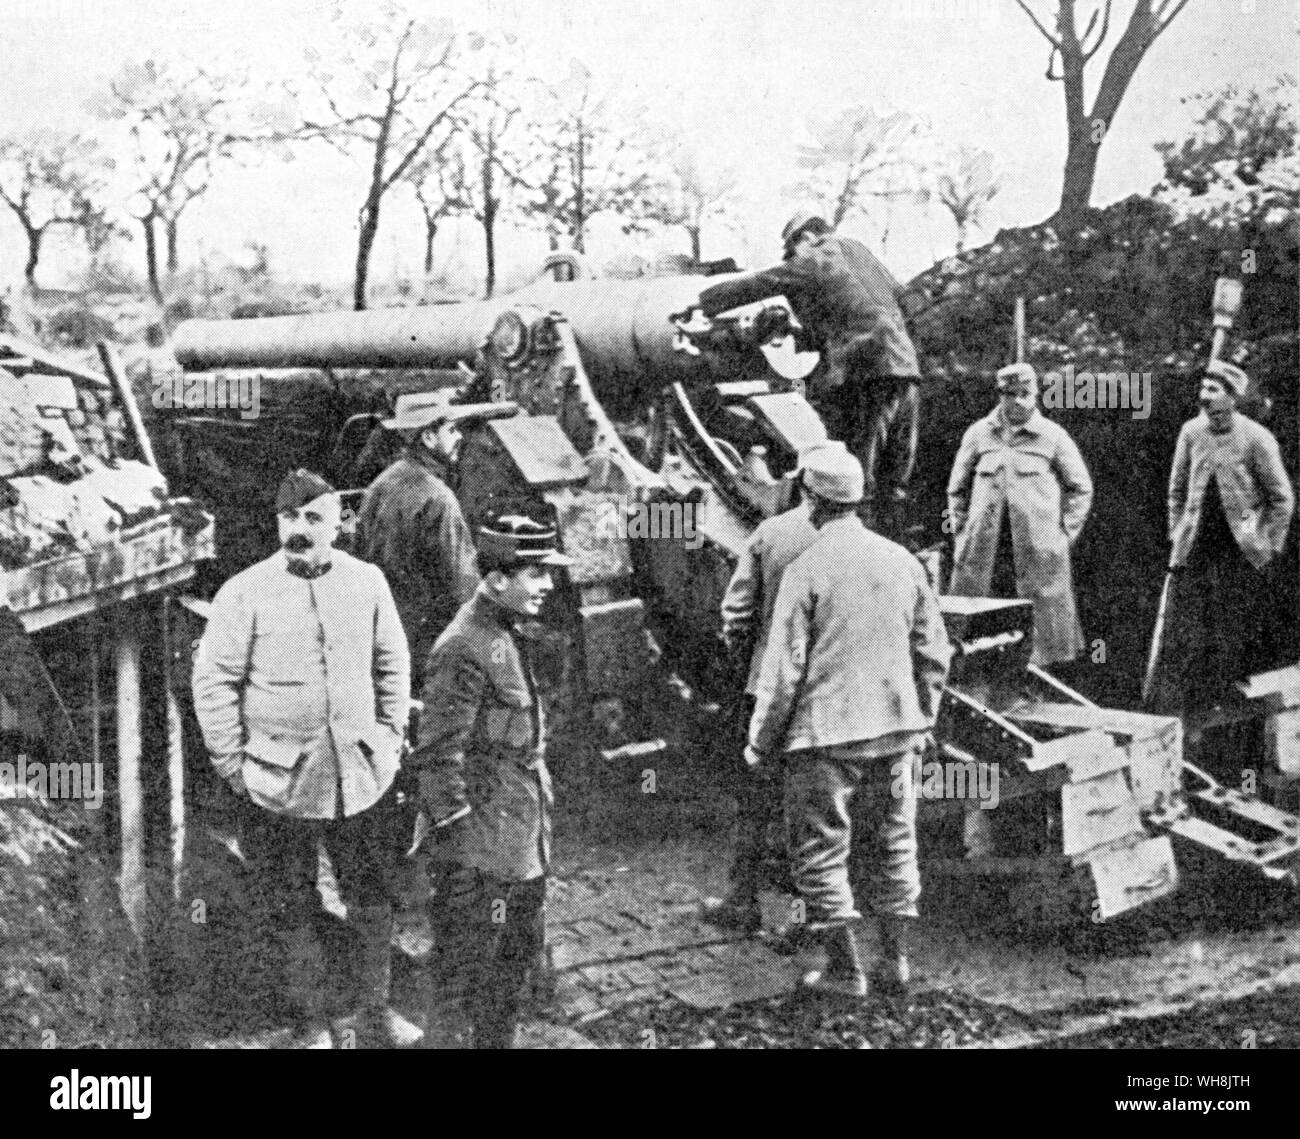 Un Français 155 à Verdun. Les deux parties utilisé d'énormes canons pour pulvériser l'ennemi dans leurs tranchées et fortifications le long du front de l'Ouest Banque D'Images